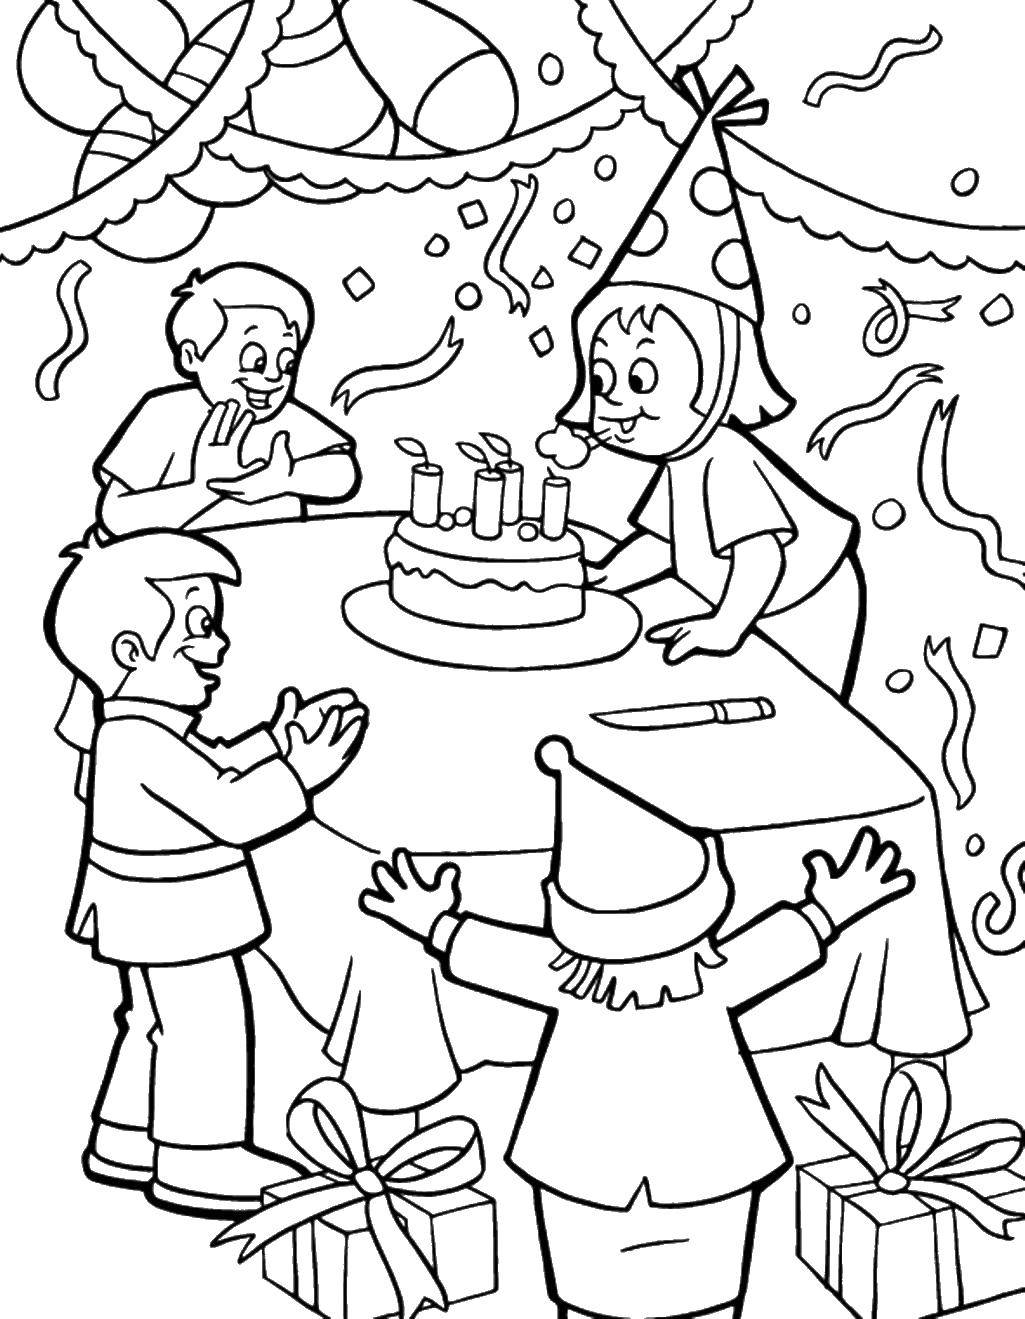 Опис: розмальовки  День народження. Категорія: день народження. Теги:  день народження, свято, торт, друзі.